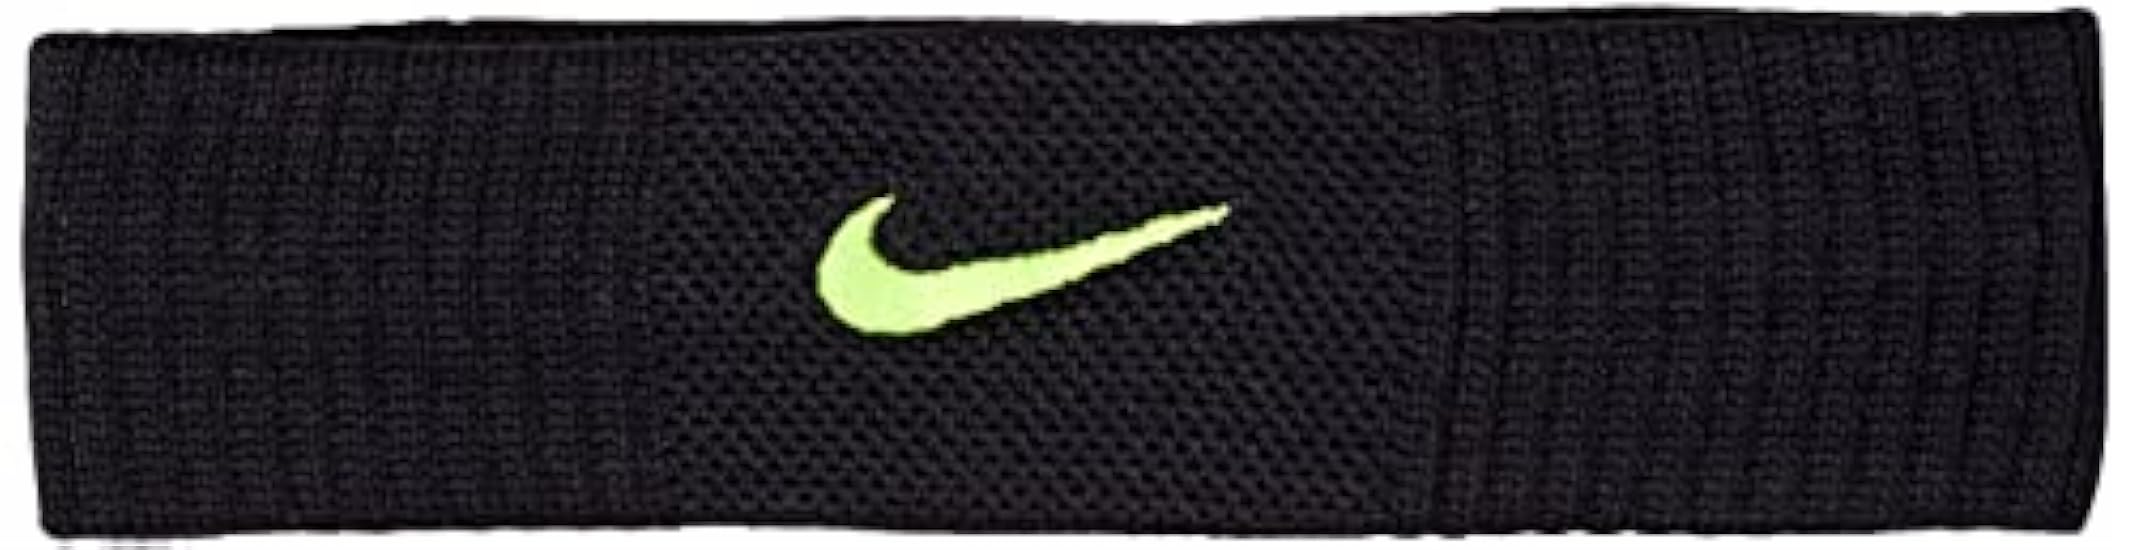 Nike - Dri-fit Reveal Headband, Fascia per la testa, unisex, adulto 143879755